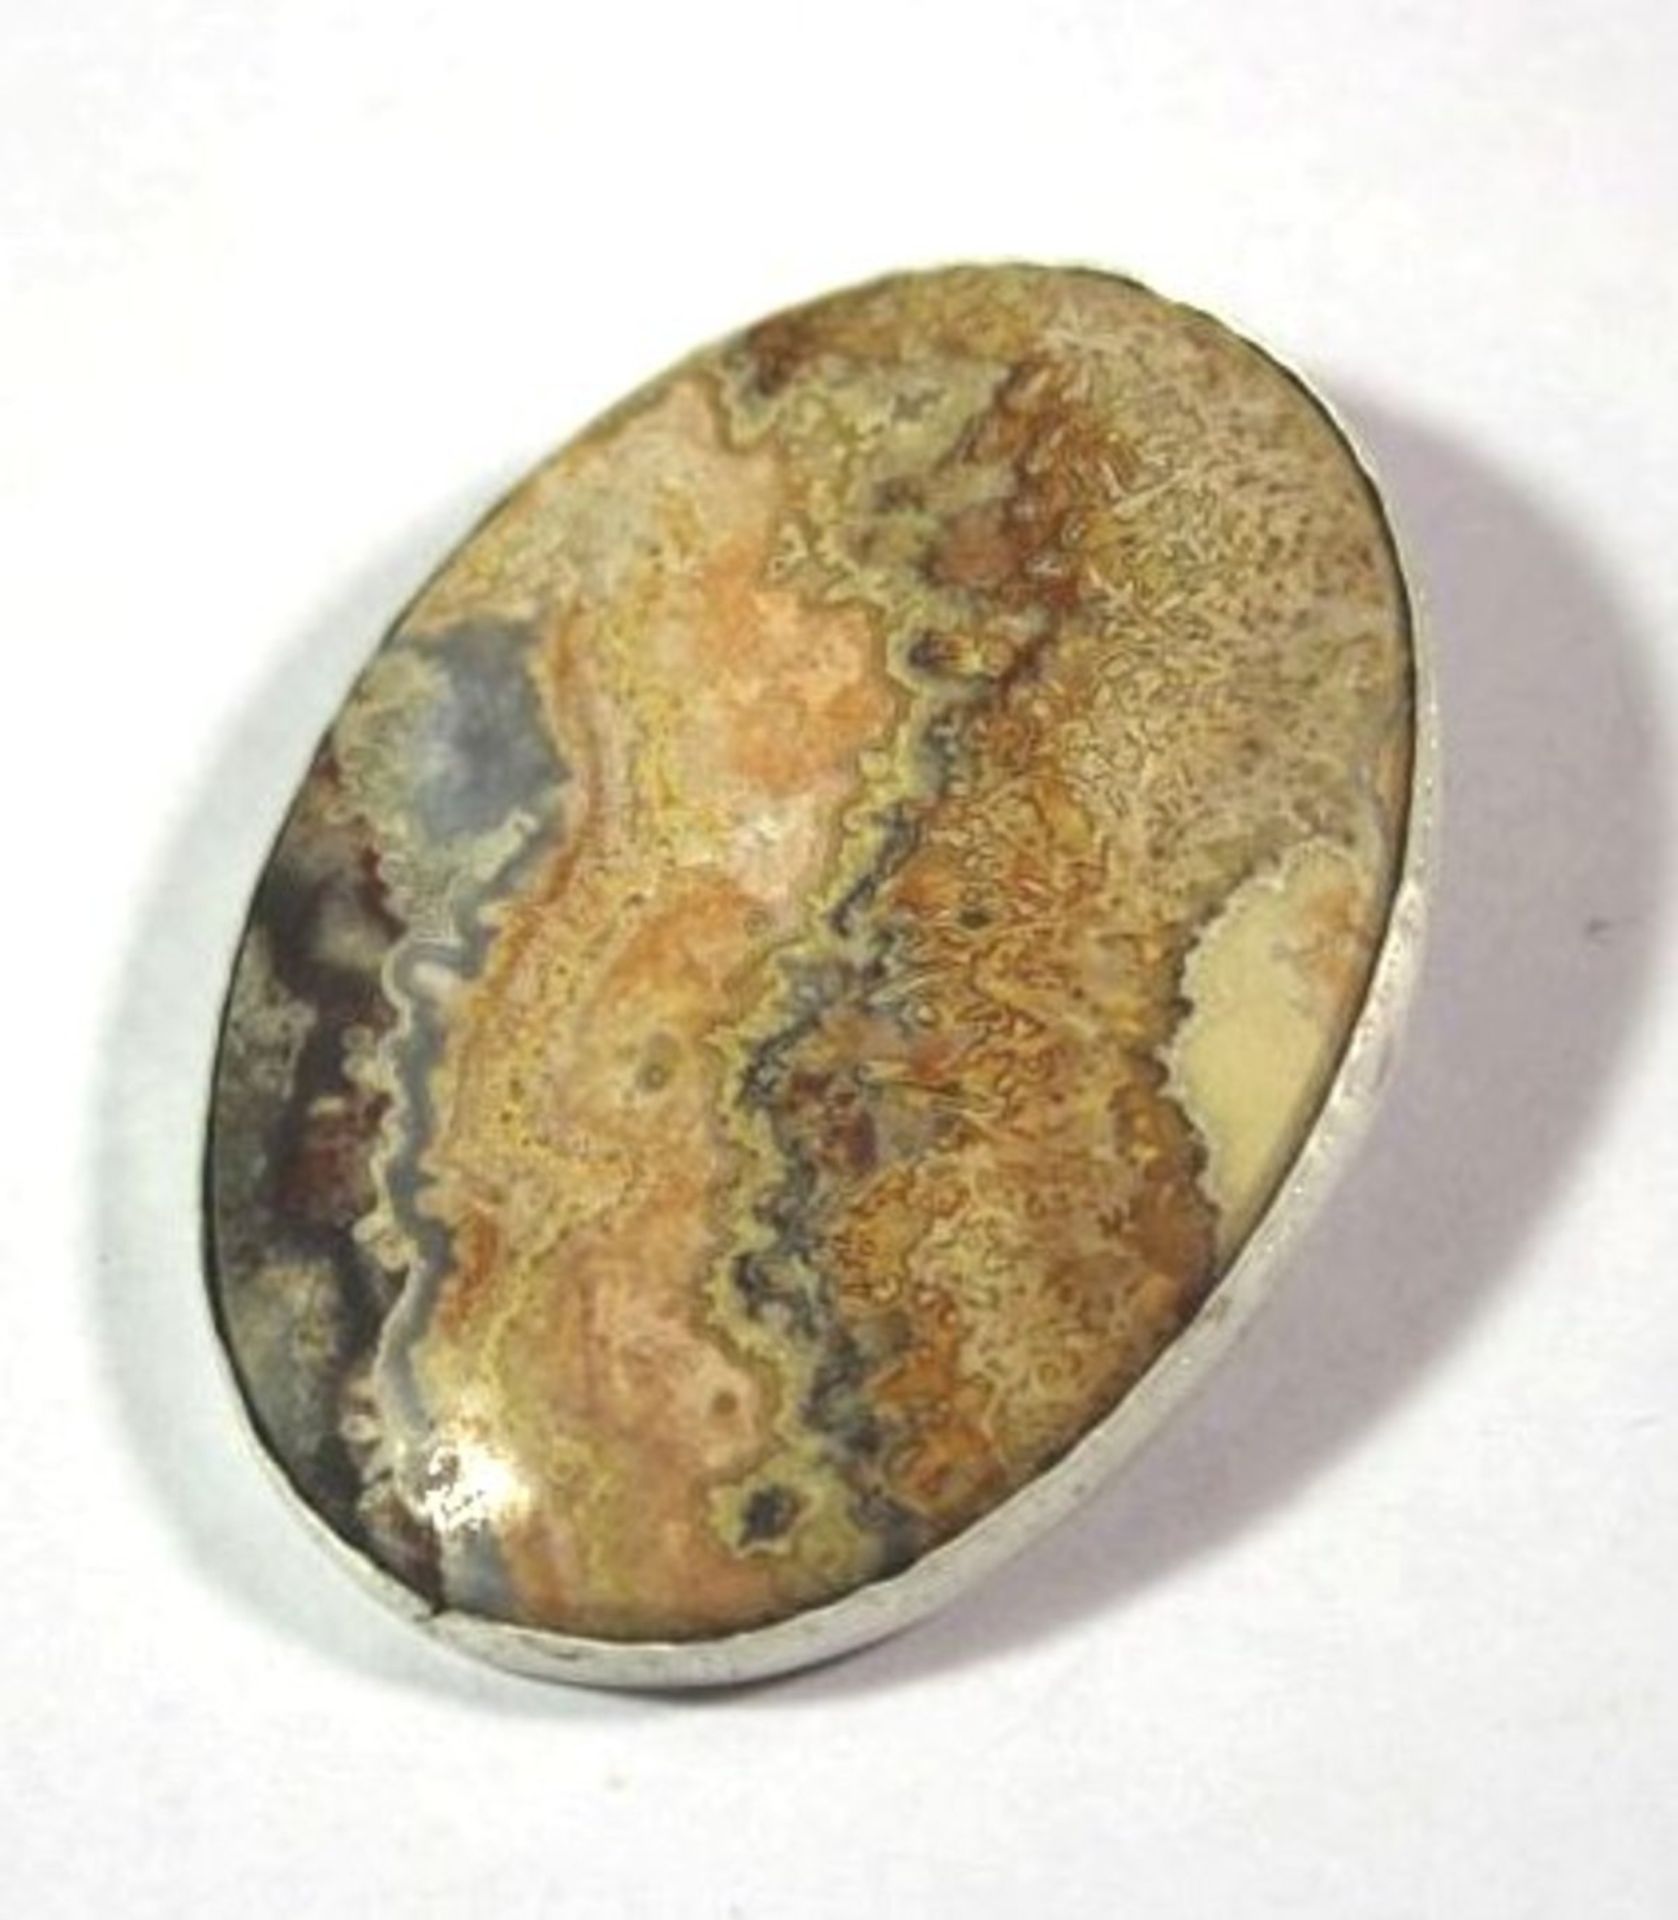 gr. Brosche und Ring, Sand Jaspis, Silber 925, zus. ca. 38gr., Brosche 5 x 3,5cm, RG 56. - Bild 3 aus 4